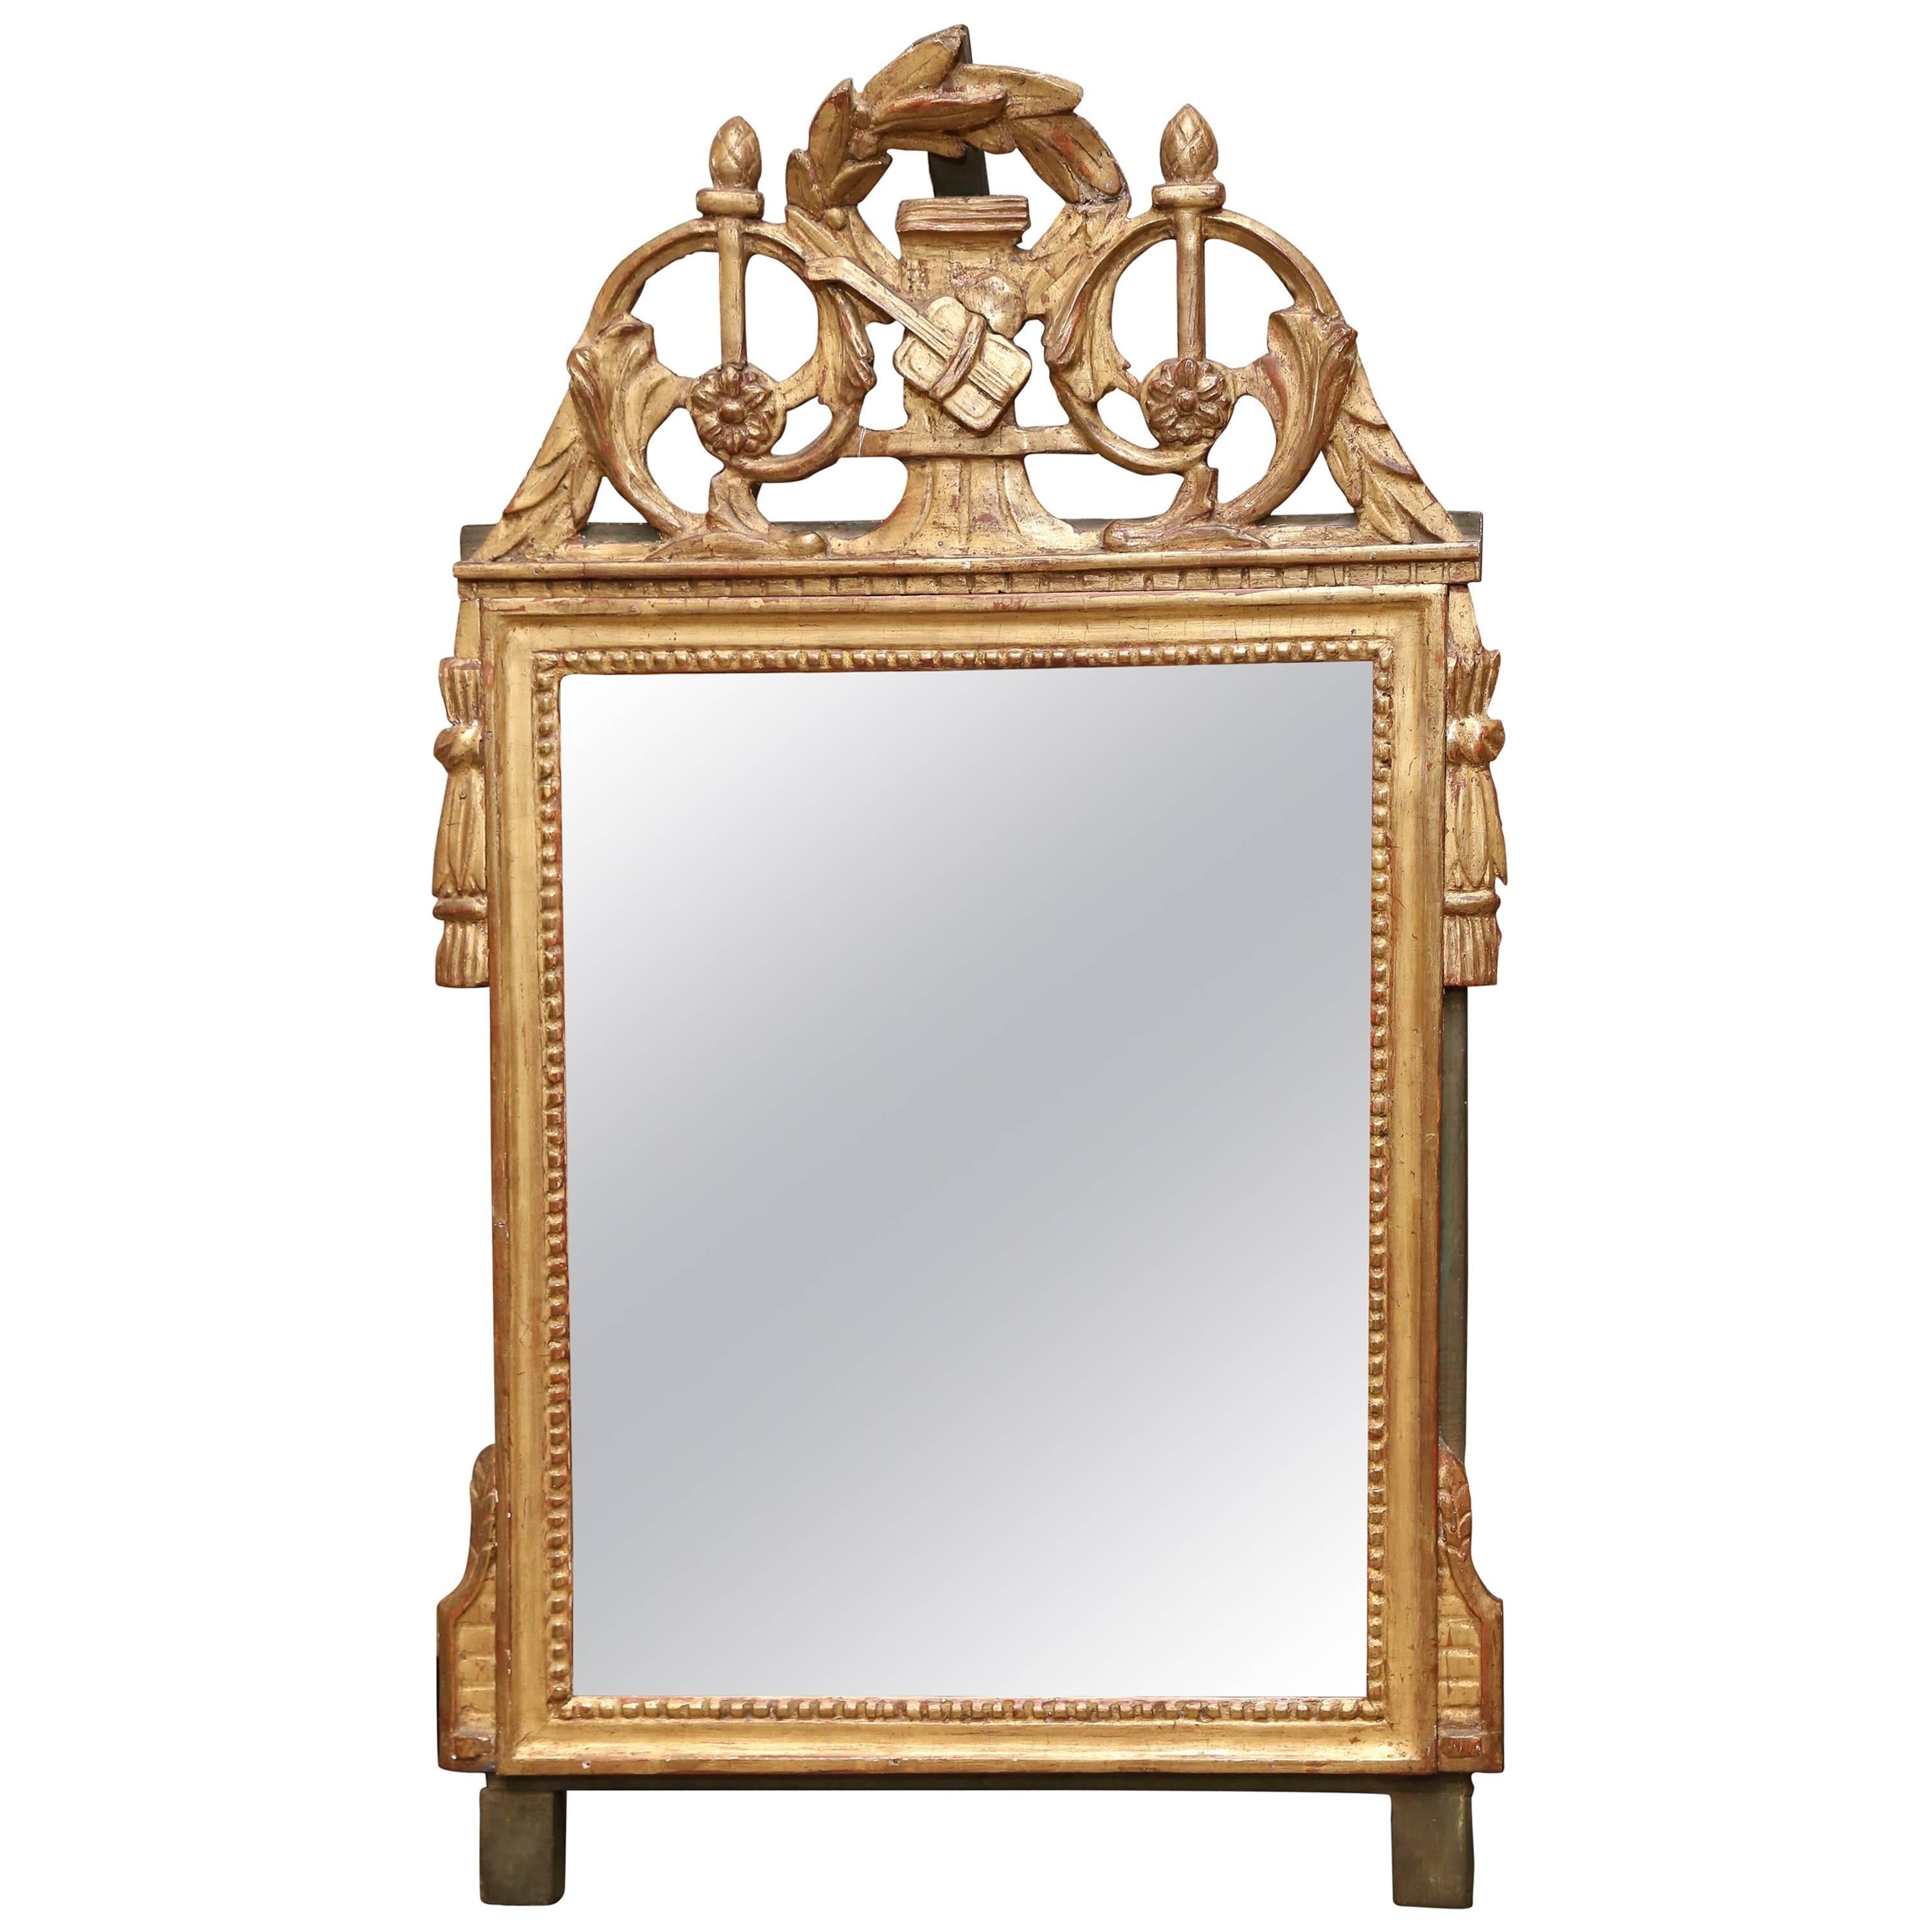 Spiegel im Louis XVI-Stil aus dem 18. Jahrhundert